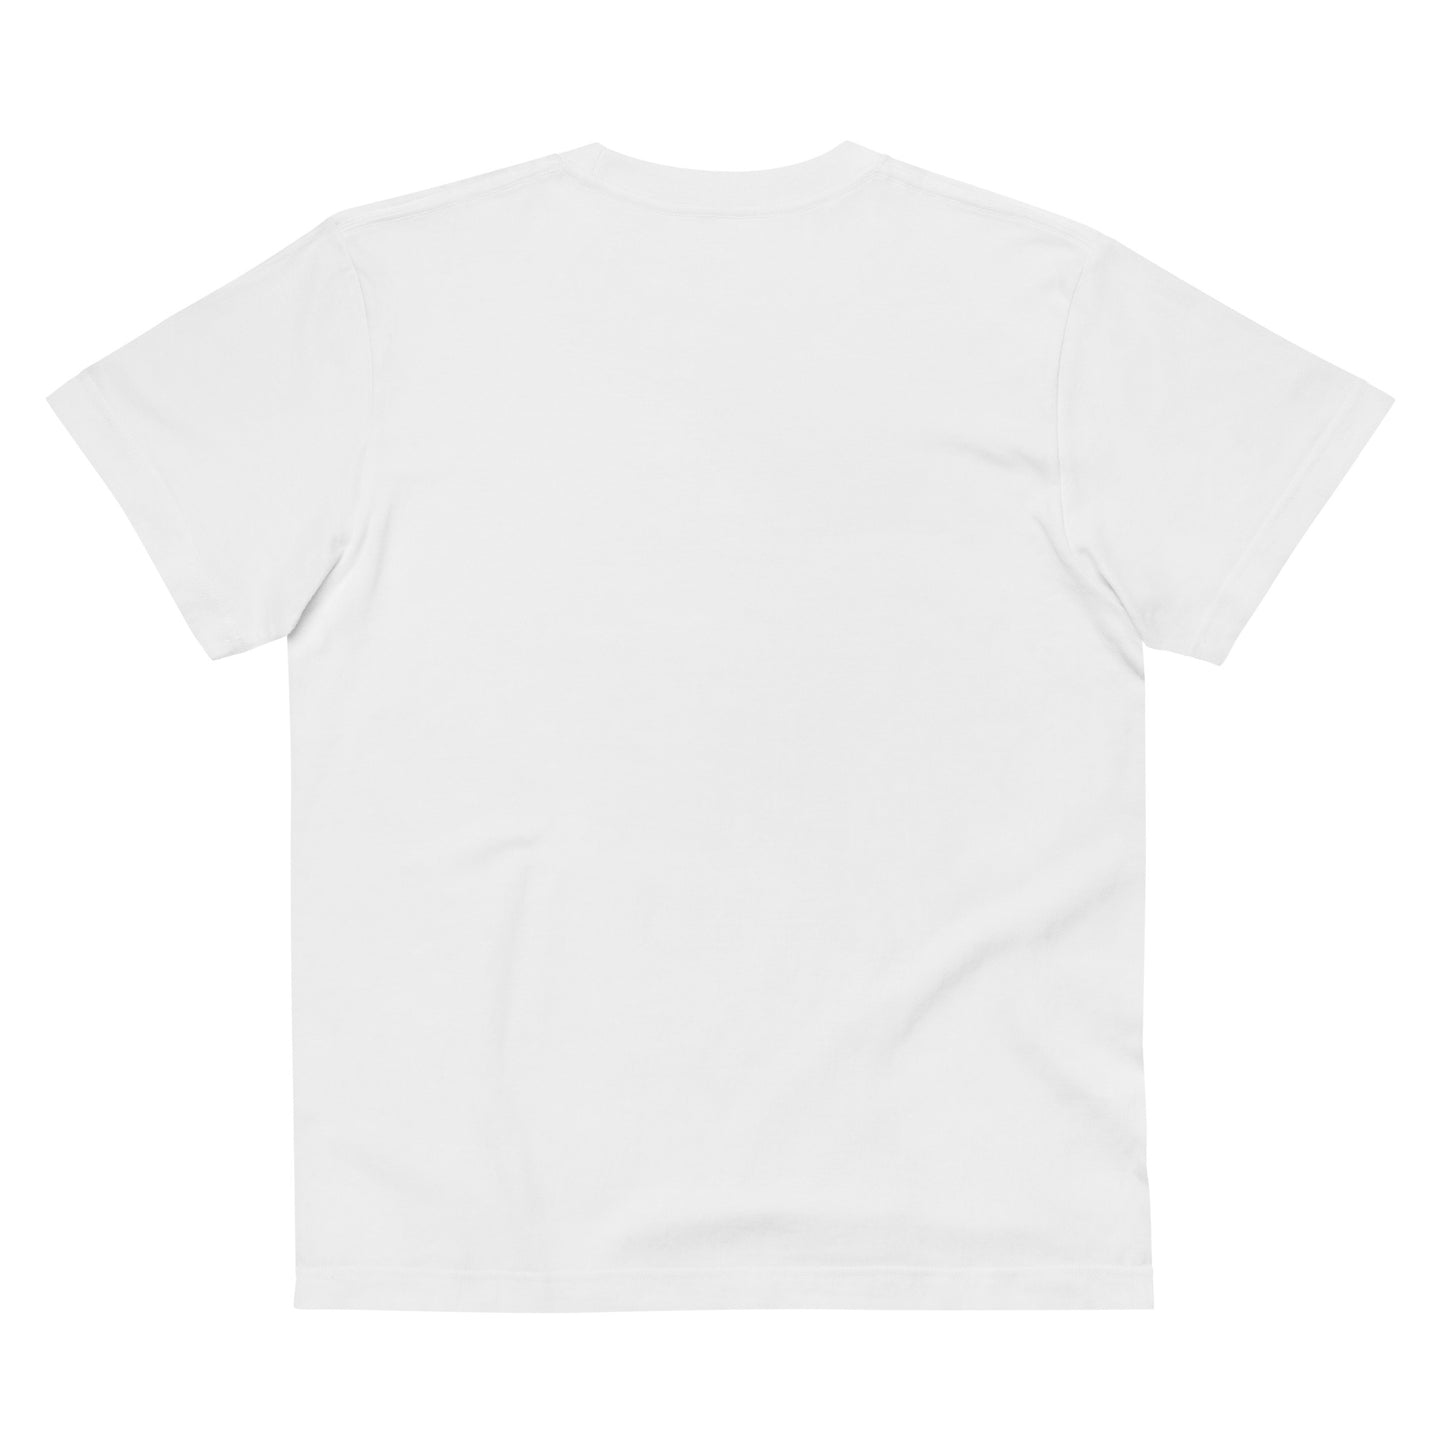 P020 - เสื้อยืด/แบบดั้งเดิม (โพนี่ : สีขาว/สีดำ)